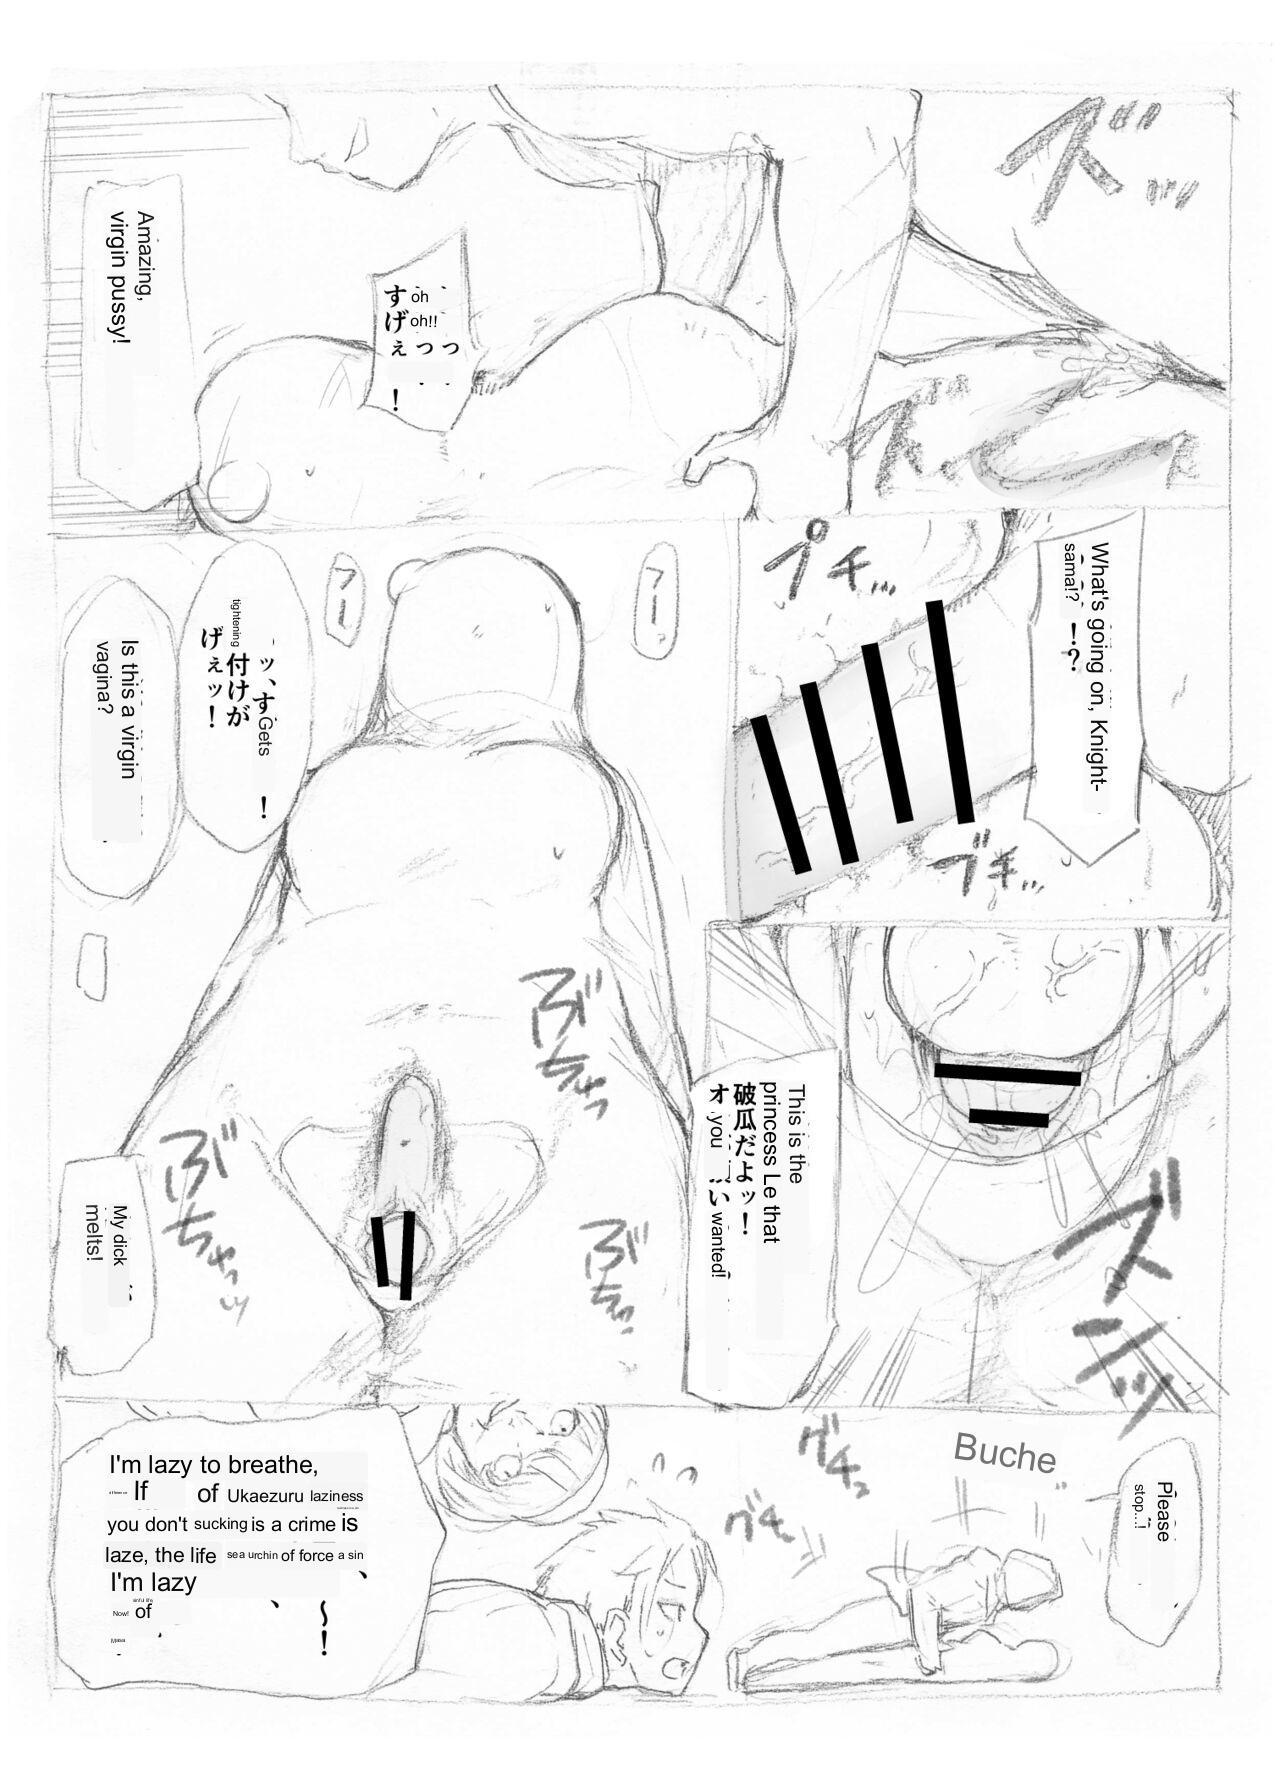 [Fujiwara Shunichi] Emilia Kumo Ito Kousoku Manga (Re: Zero kara Hajimeru Isekai Seikatsu) google translate 24